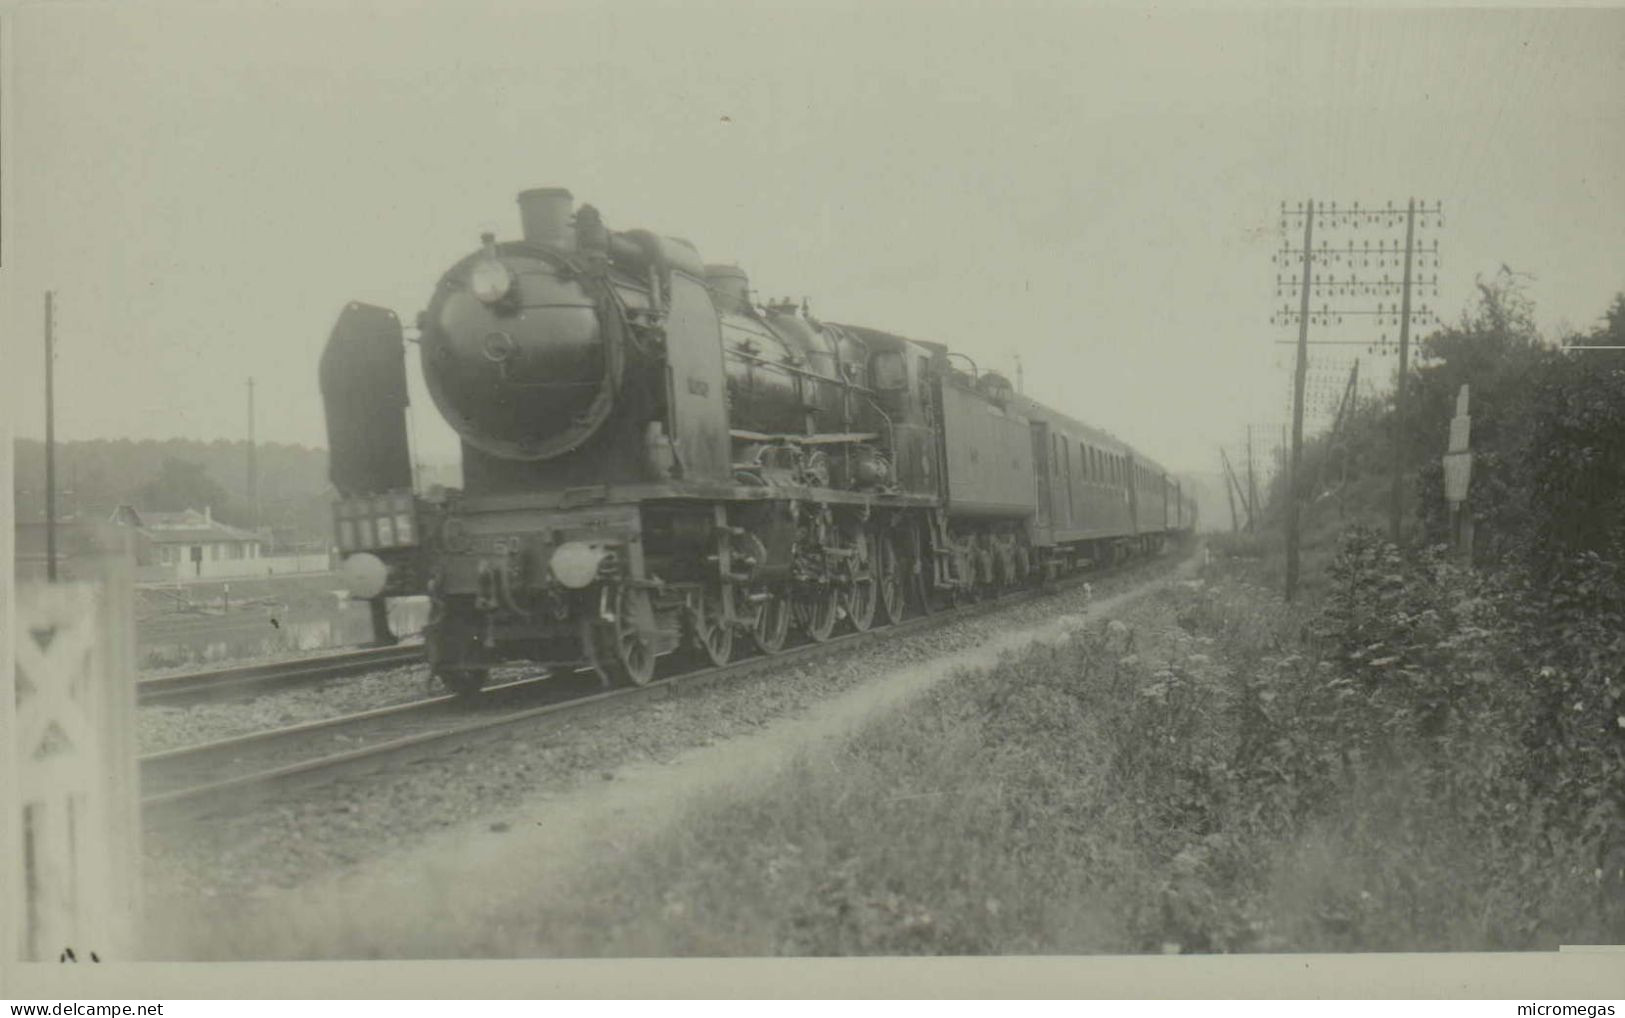 Reproduction - Locomotive à Identifier - Eisenbahnen